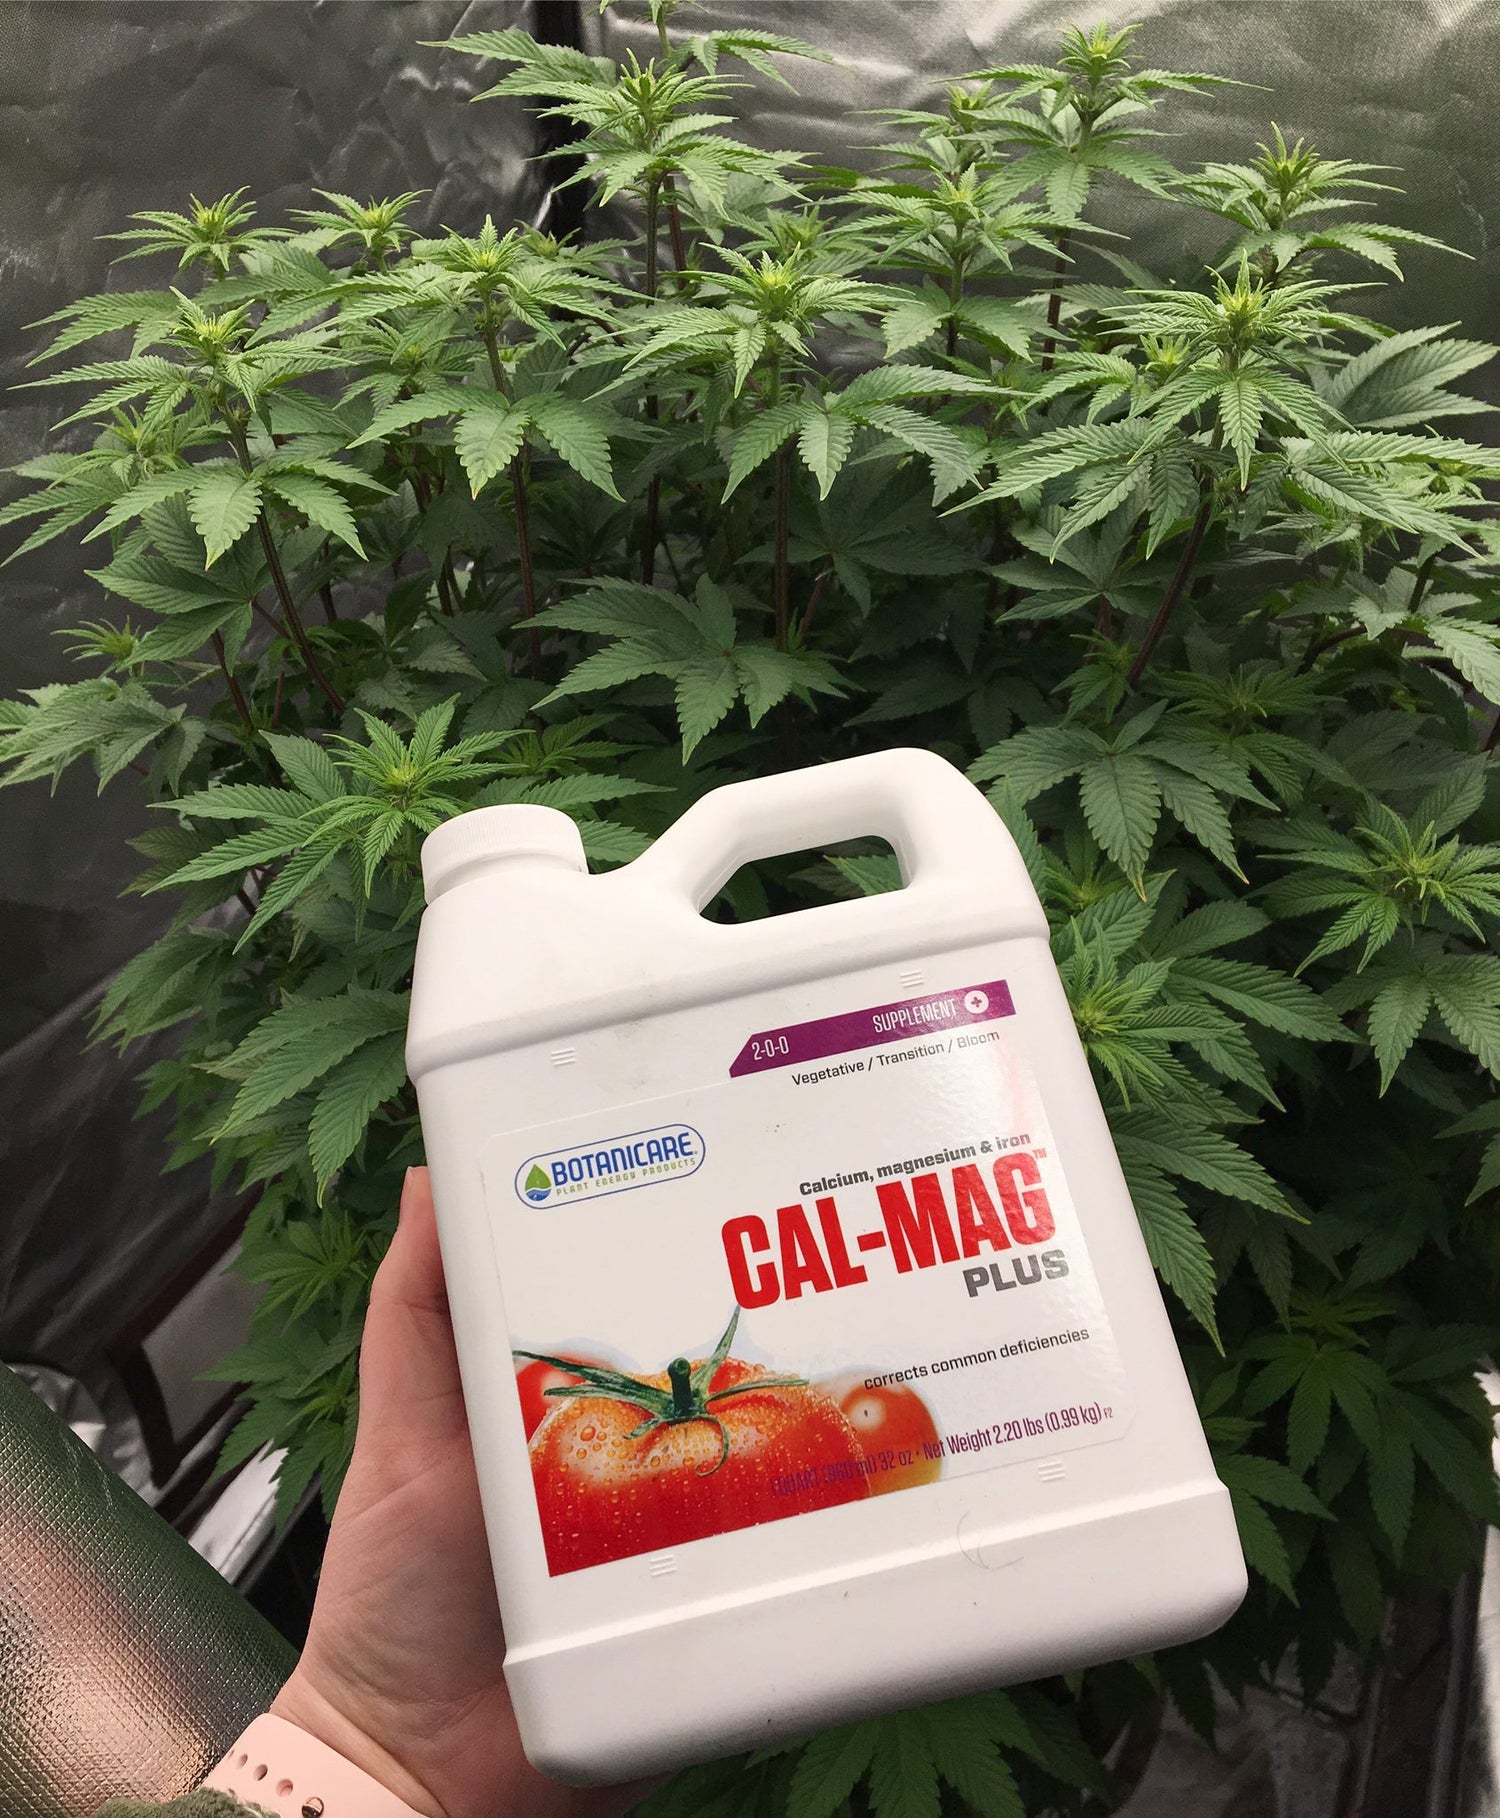 CALMAG+ suplemento maestro de BOTANICARE, calmag+ es uno de los productos más utilizados en la industria cannabica e hidropónica en la actualidad